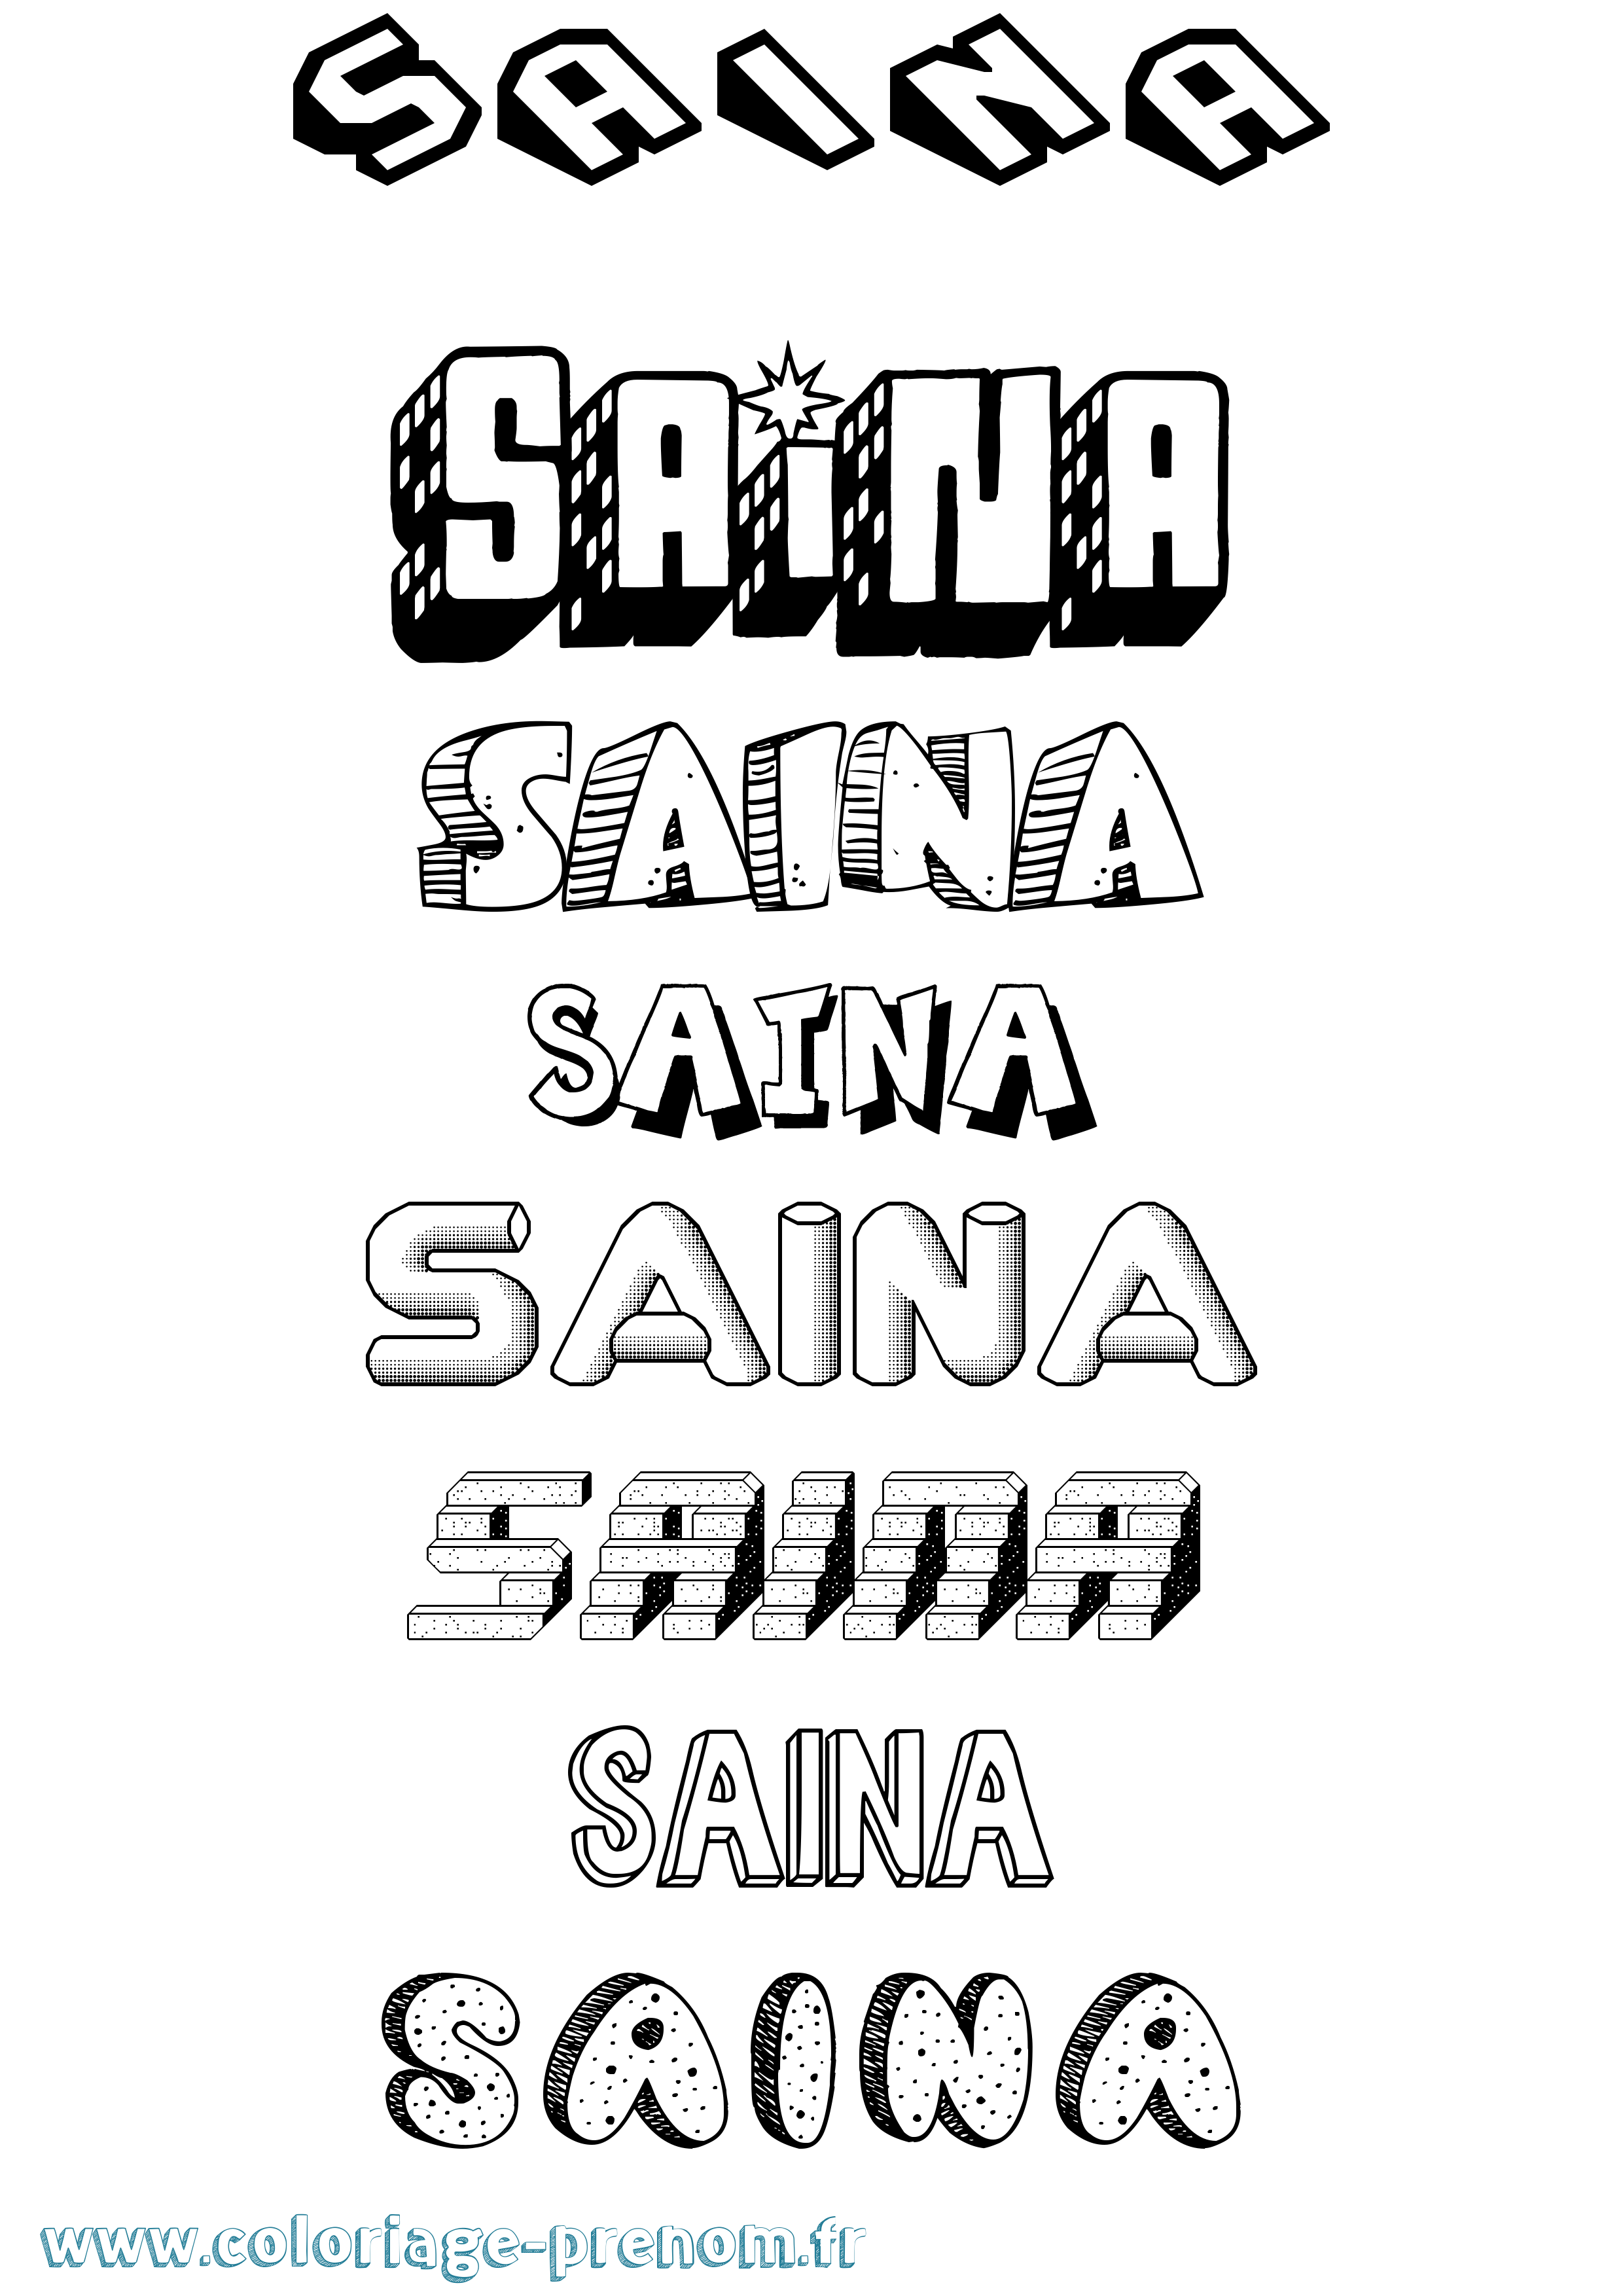 Coloriage prénom Saina Effet 3D